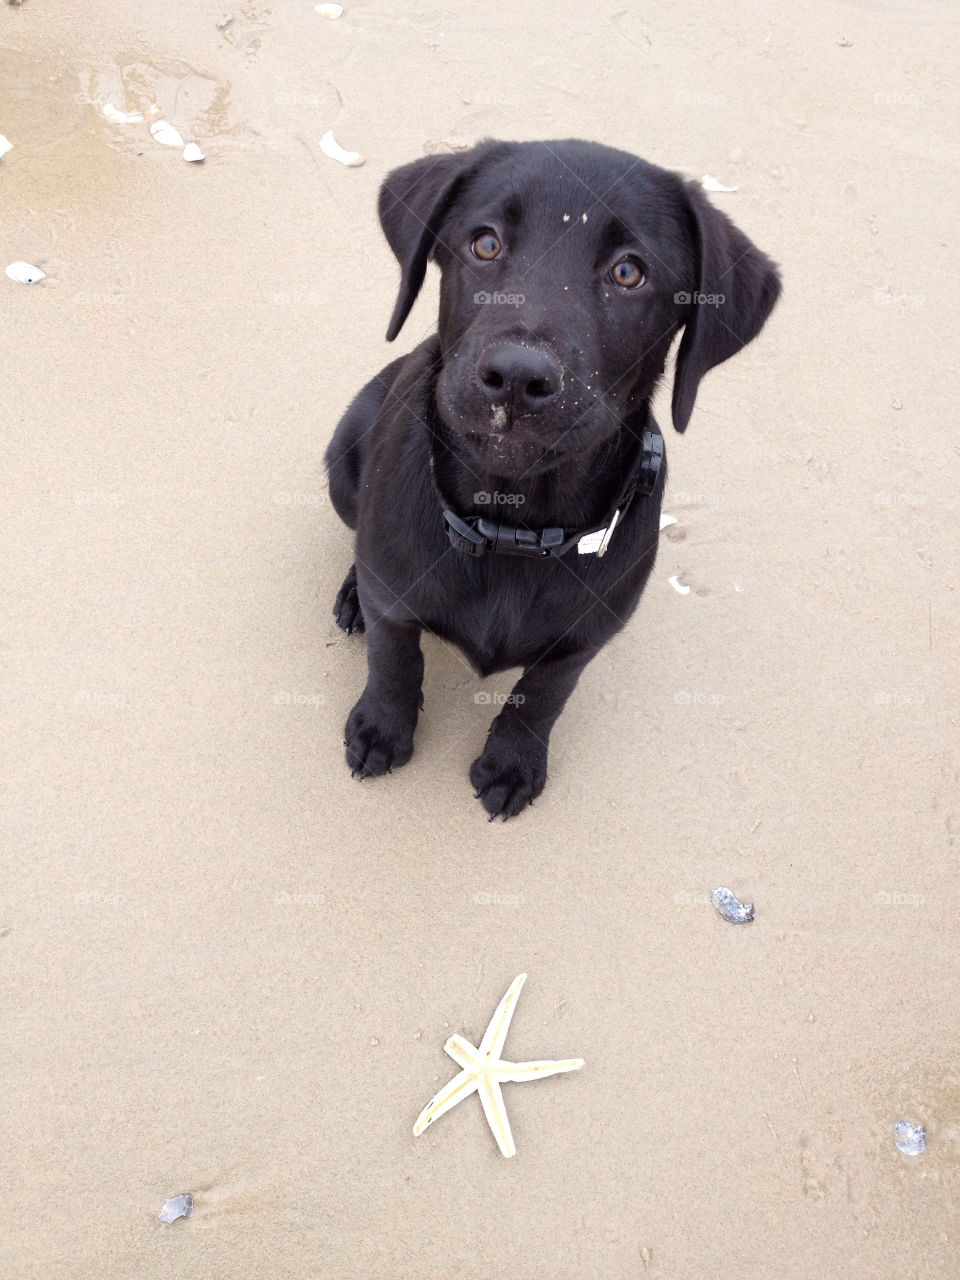 corolla beach sand puppy by smithkjenna